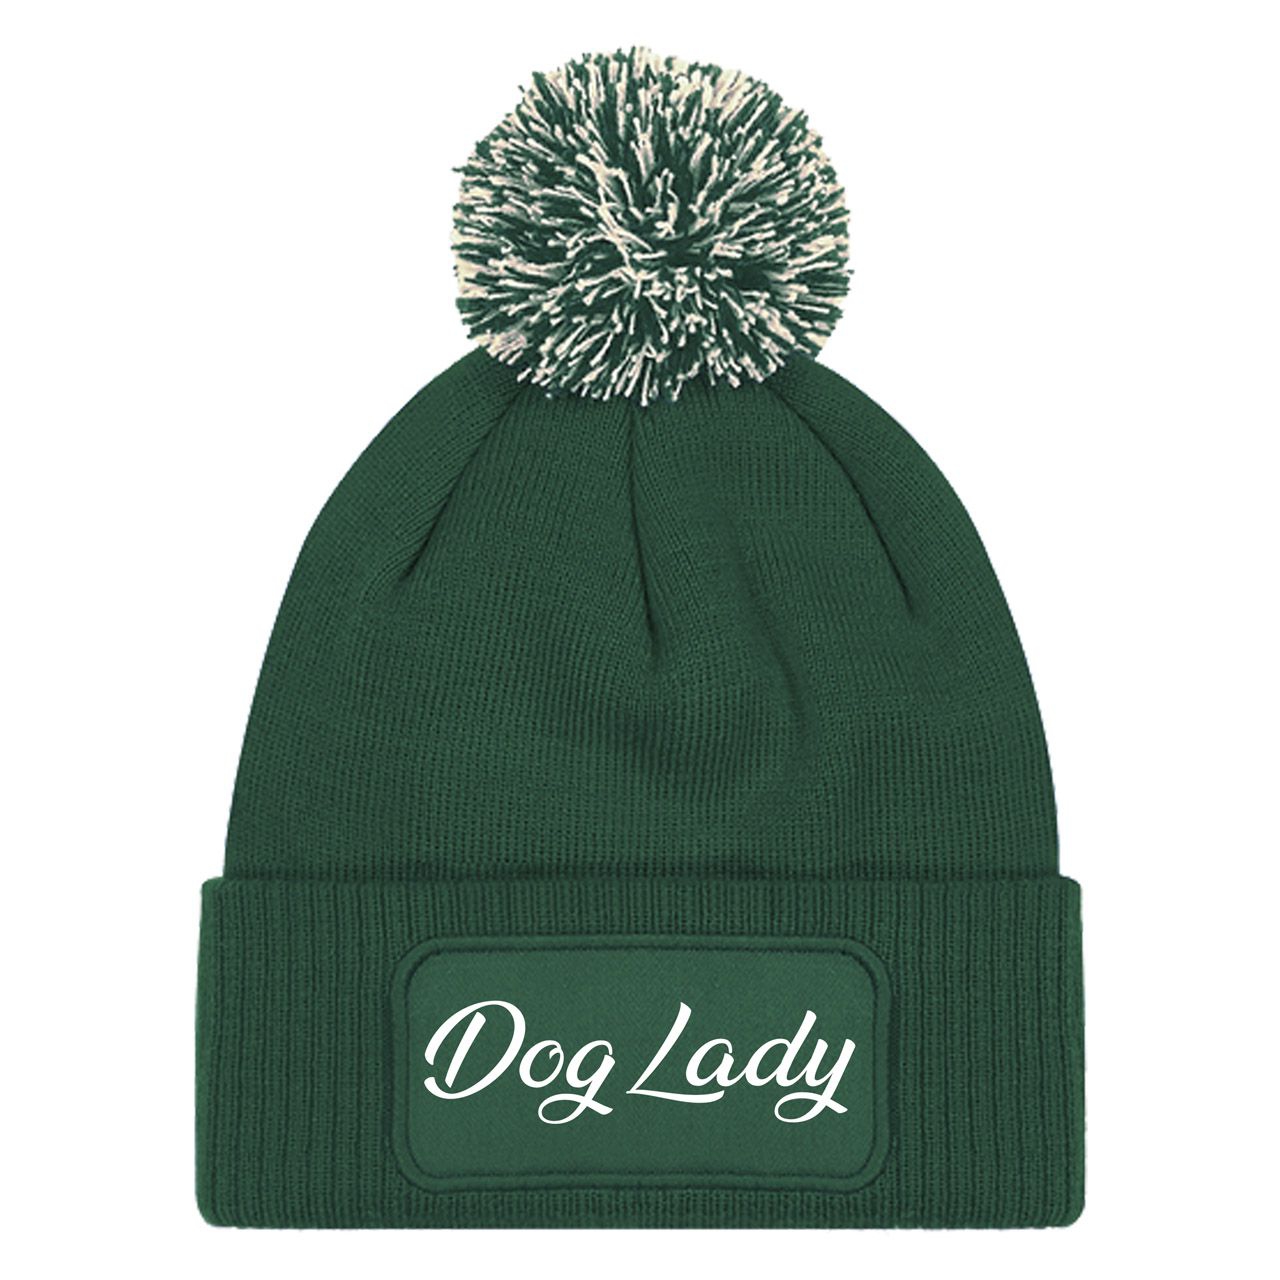 Dog Lady Mütze Patch Bommel dunkelgrün